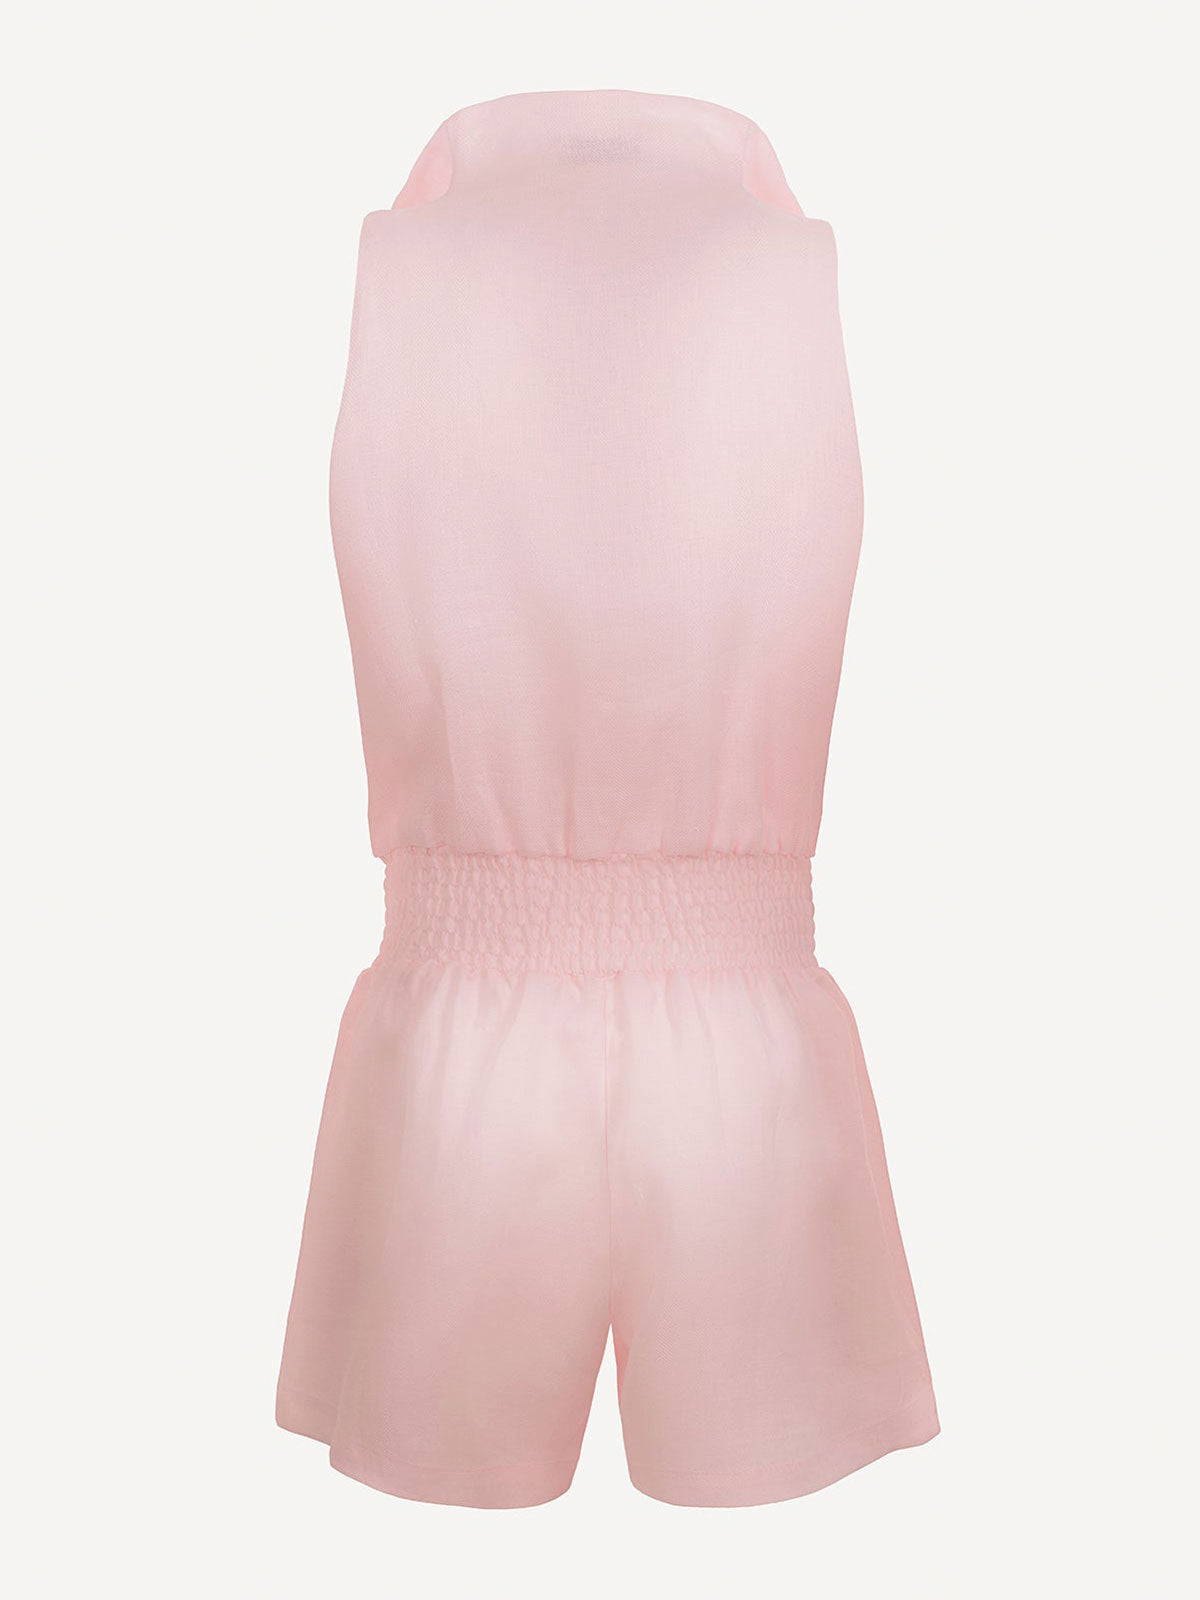 Tuta Zip  for woman  100% Capri pink linen jumpsuit back